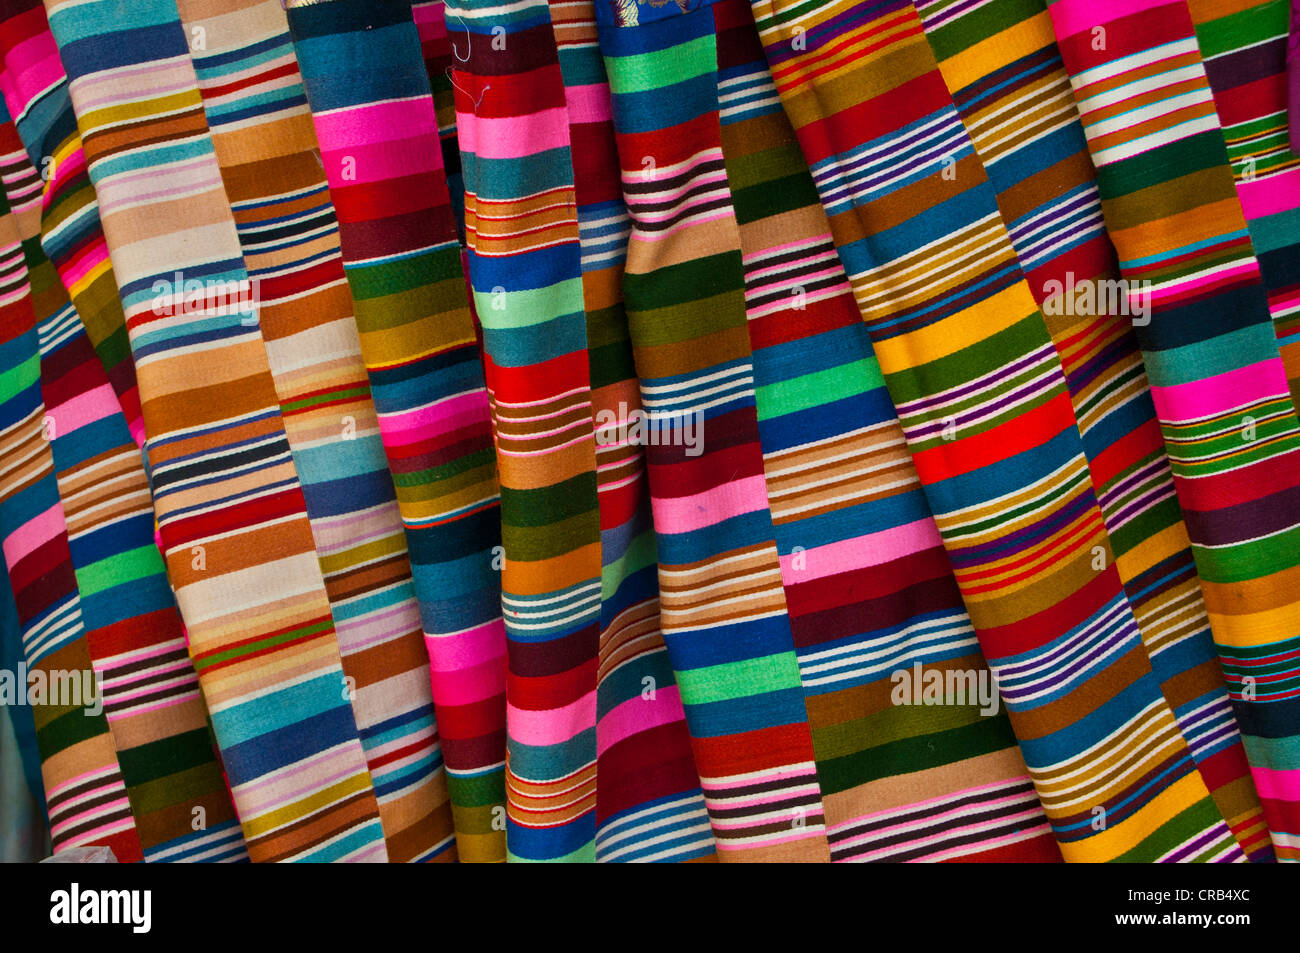 Bunte Stoffe, die verwendet werden, um tibetische Kleidung in Gyantse,  Tibet, Asien produzieren Stockfotografie - Alamy